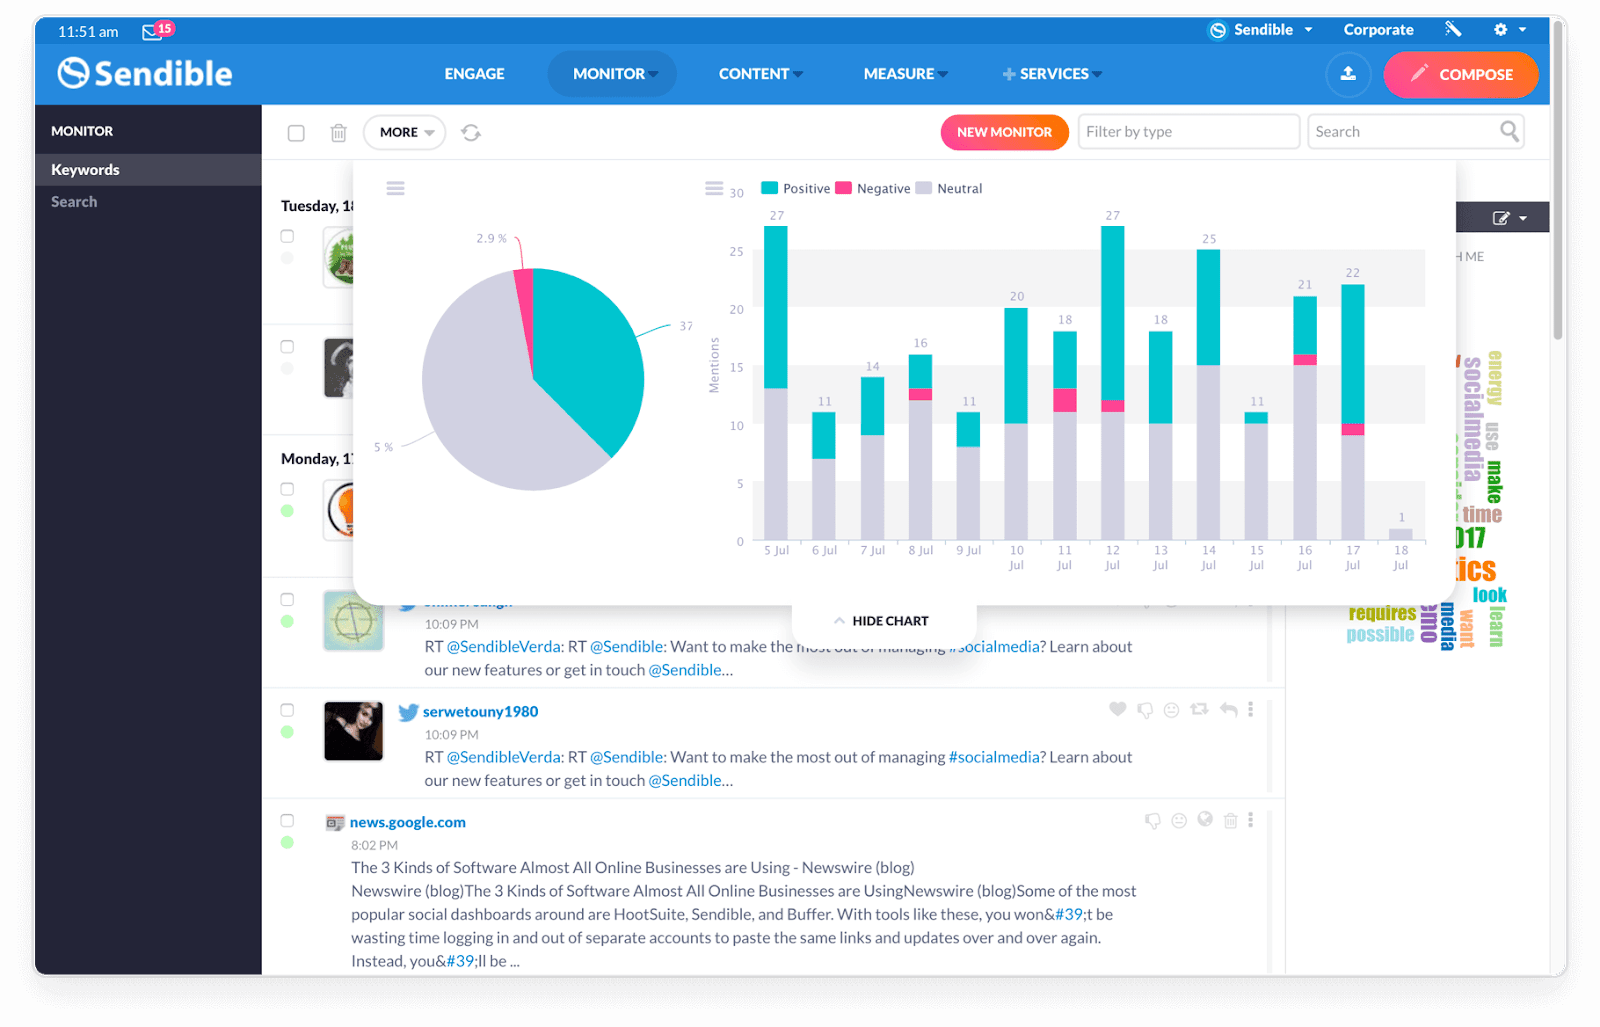 Sendible monitoring dashboard for social media monitoring showing graphs and media